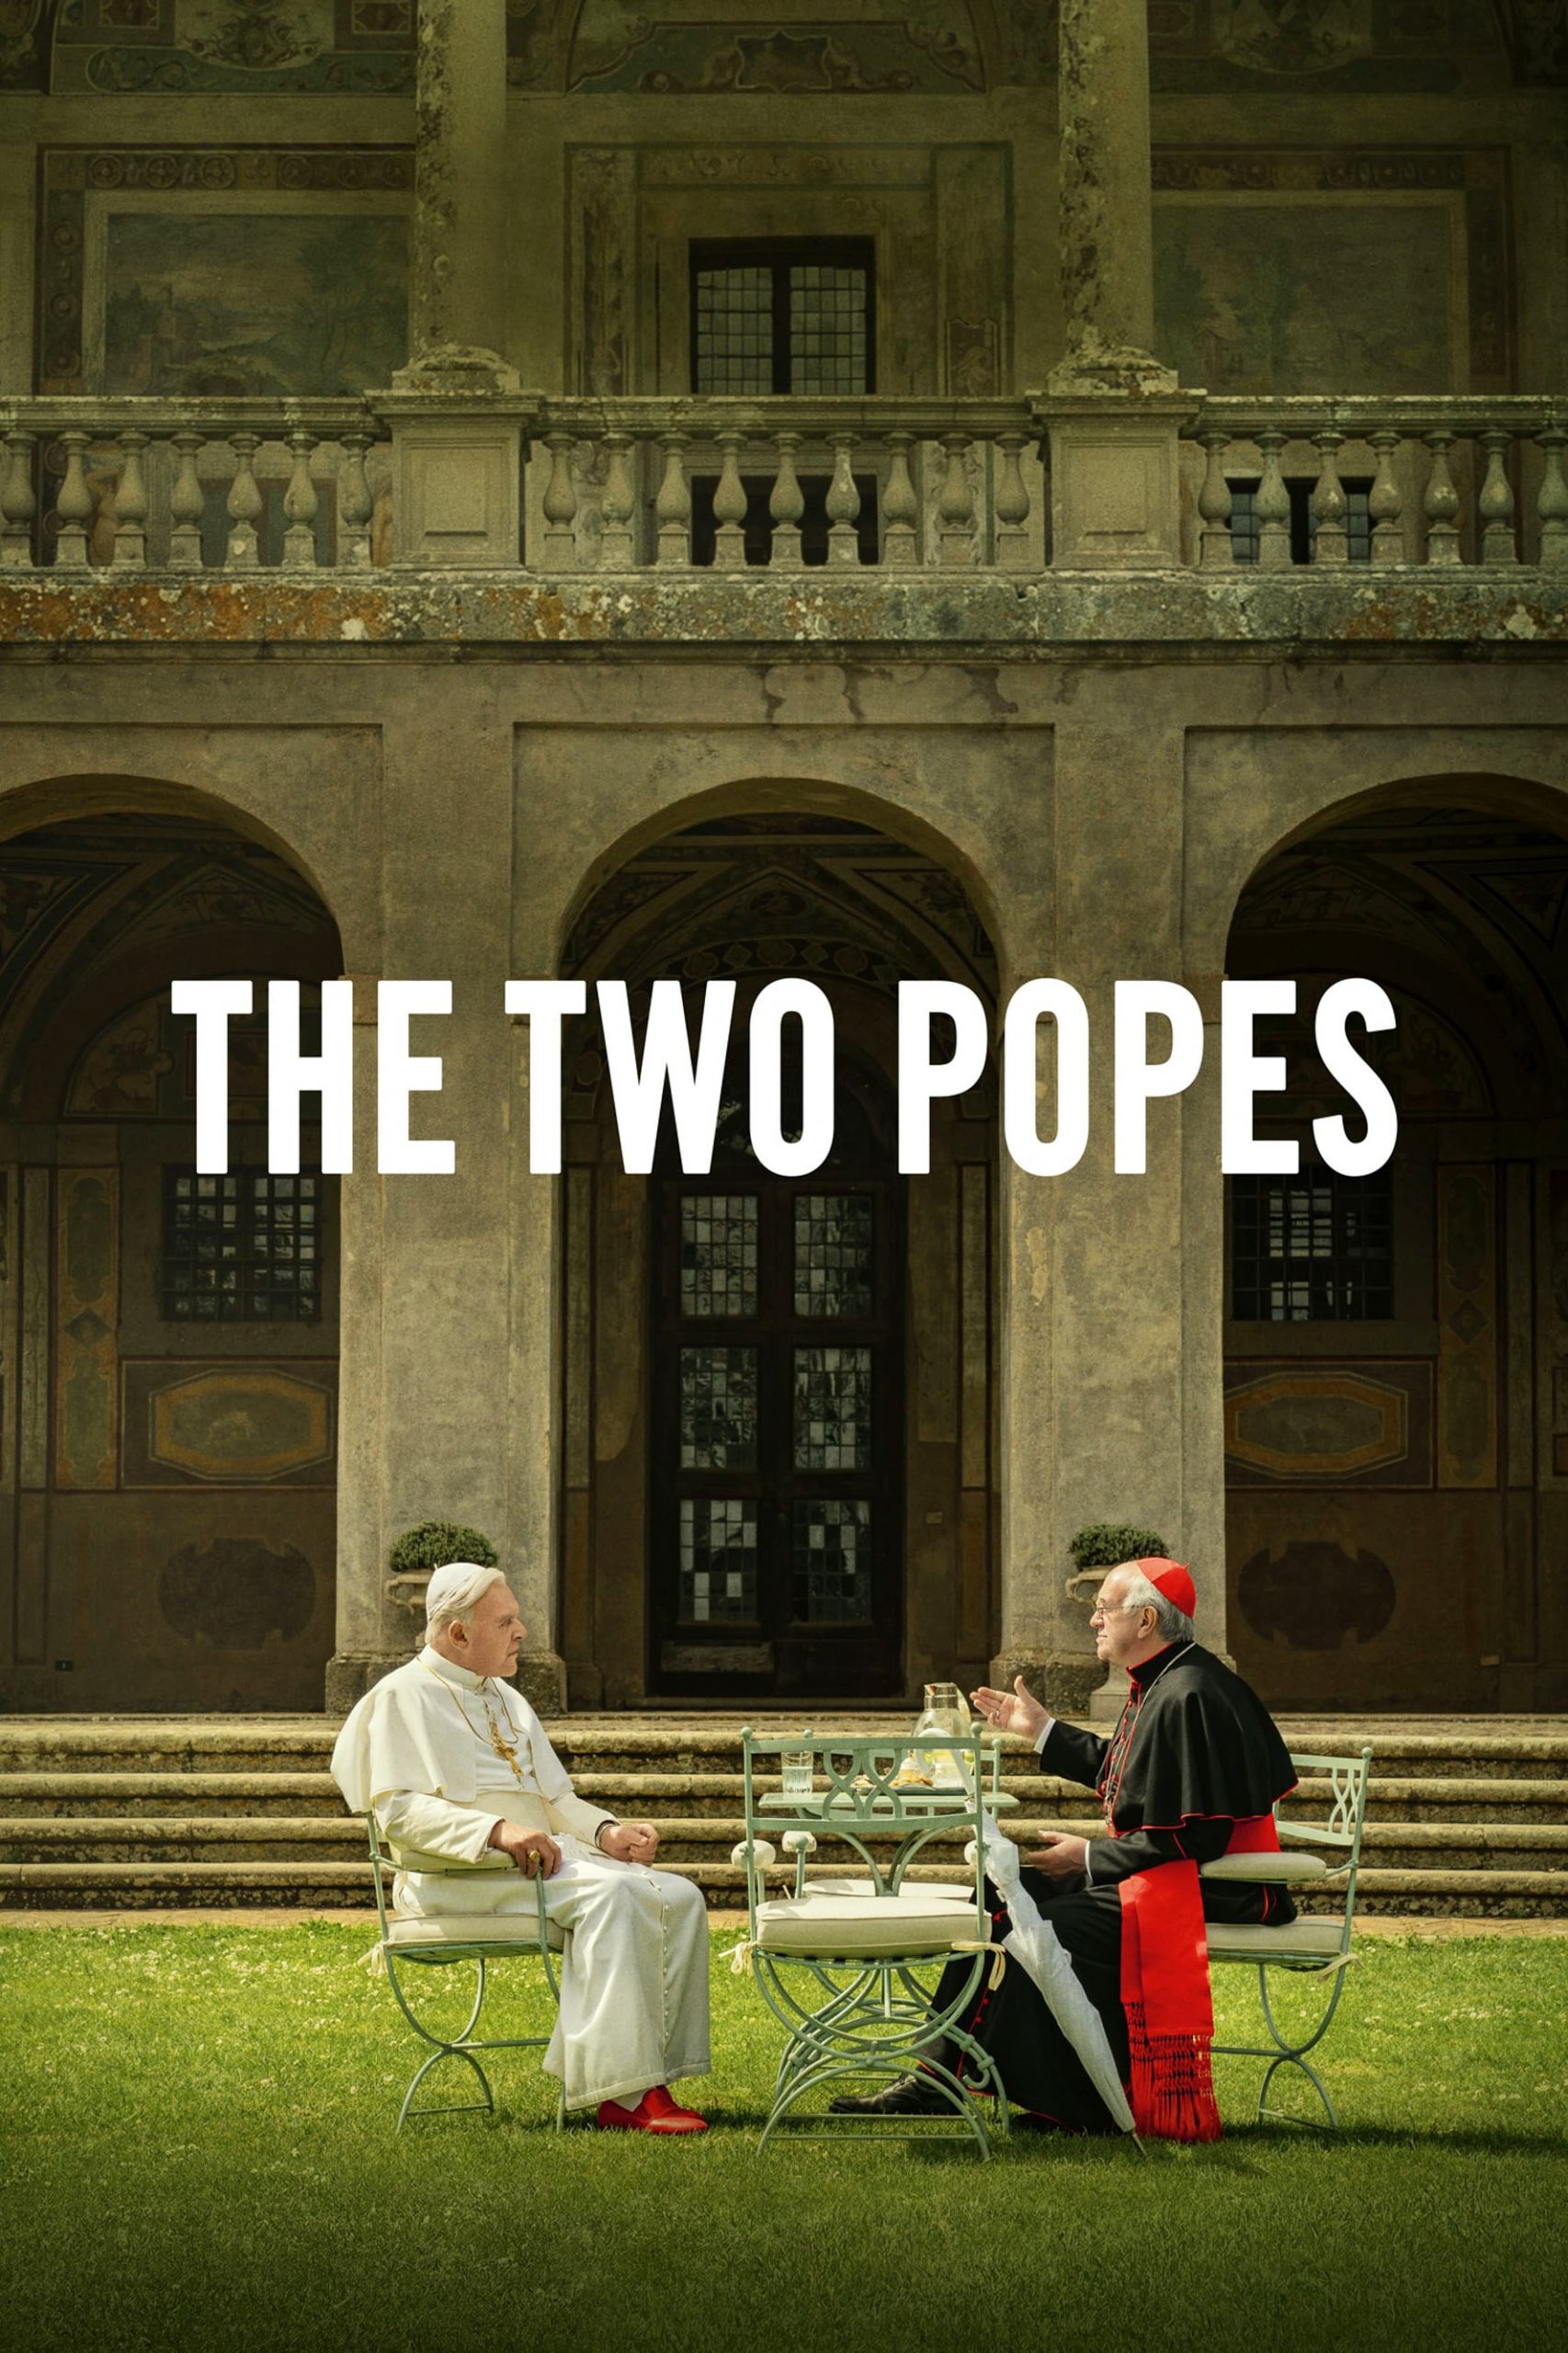 دانلود فیلم The Two Popes 2019